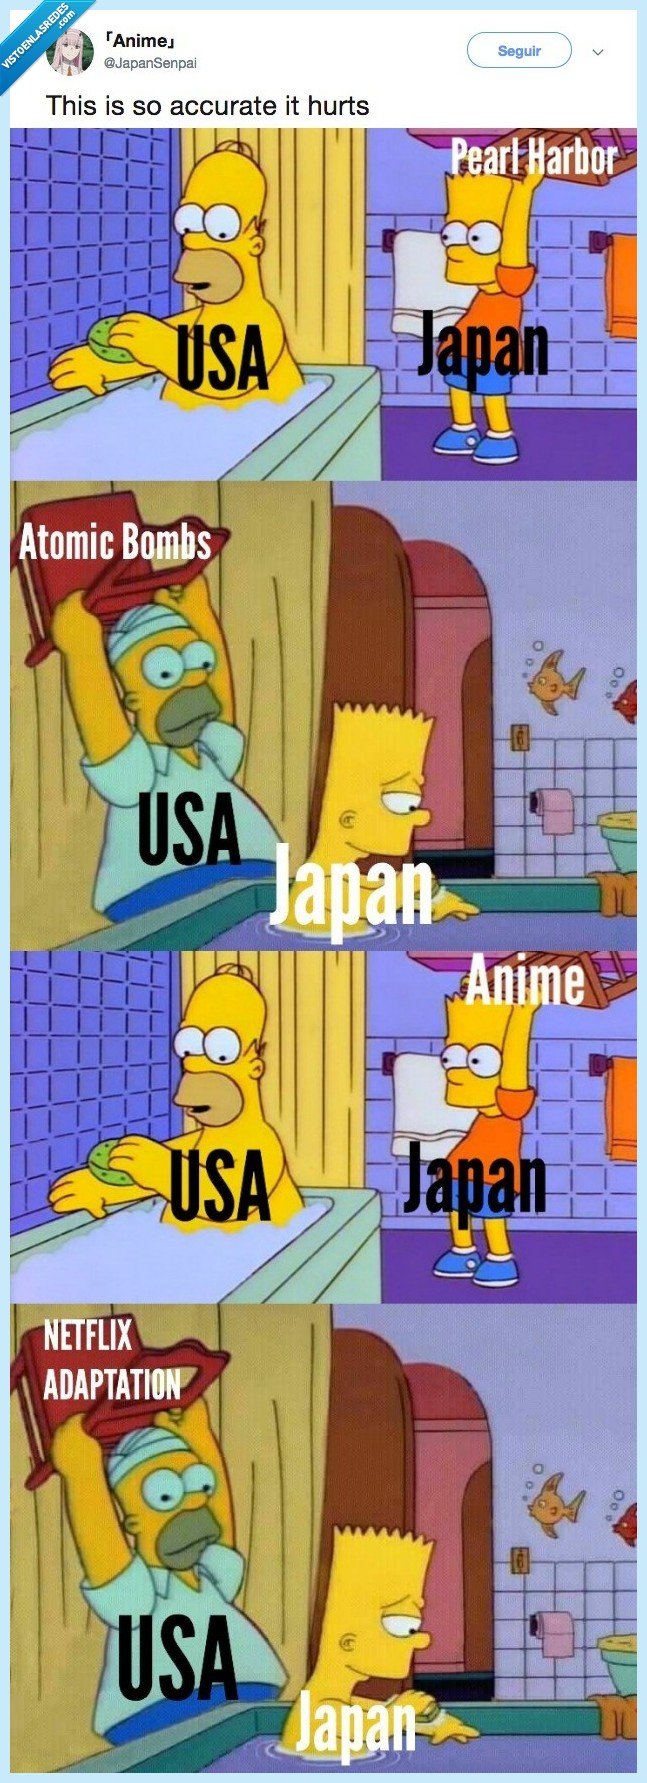 498084 - La guerra entre USA y Japón explicada con memes de los Simpsons, por @JapanSenpai